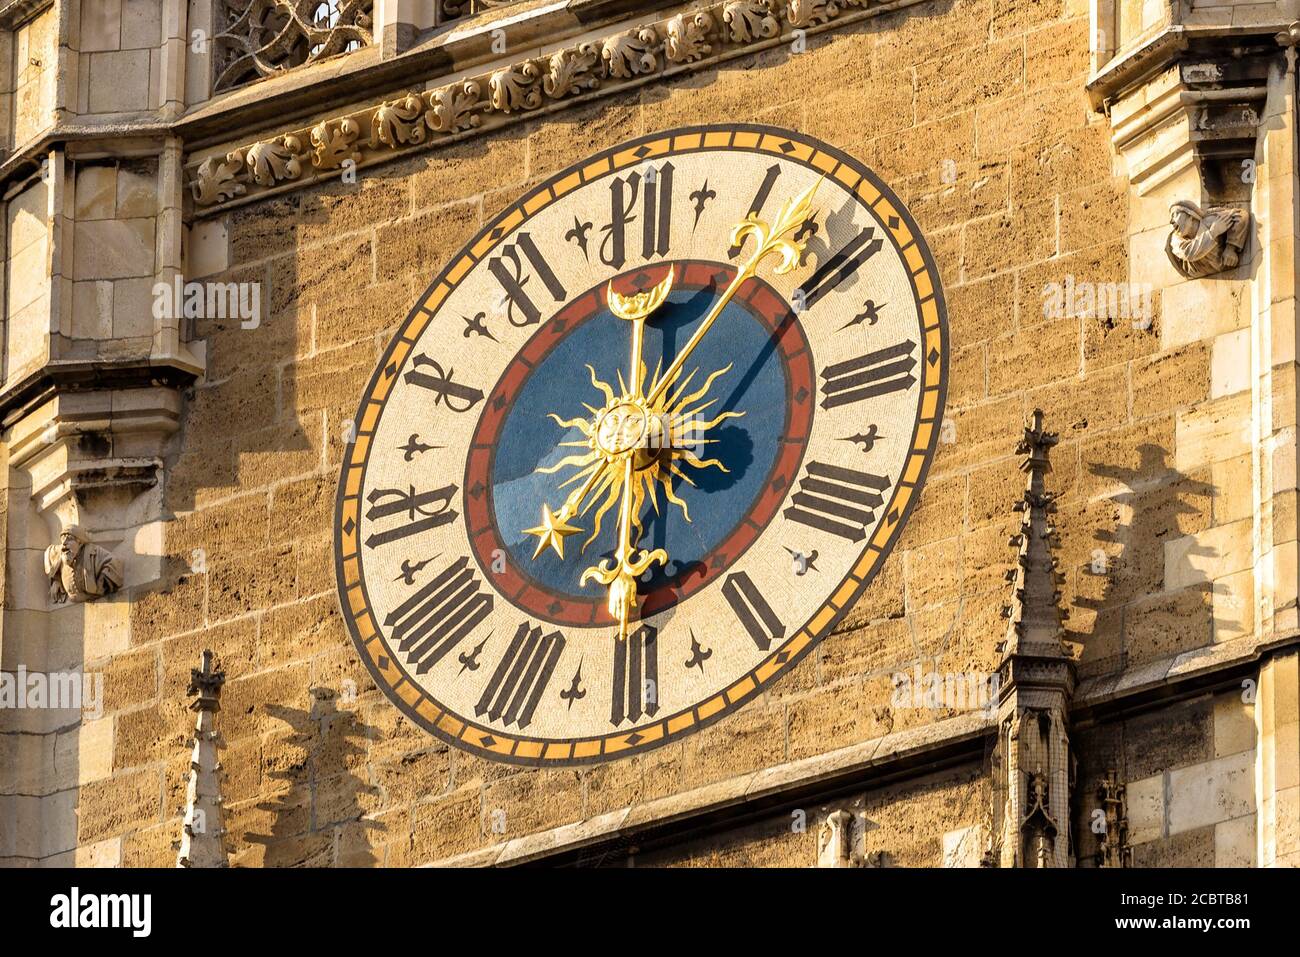 Torre del Reloj del Nuevo Ayuntamiento (Rathaus) de cerca, Munich, Baviera,  Alemania. Es un antiguo punto de referencia de Munich situado en la plaza  Marienplatz. Detalle de Gothi Fotografía de stock -